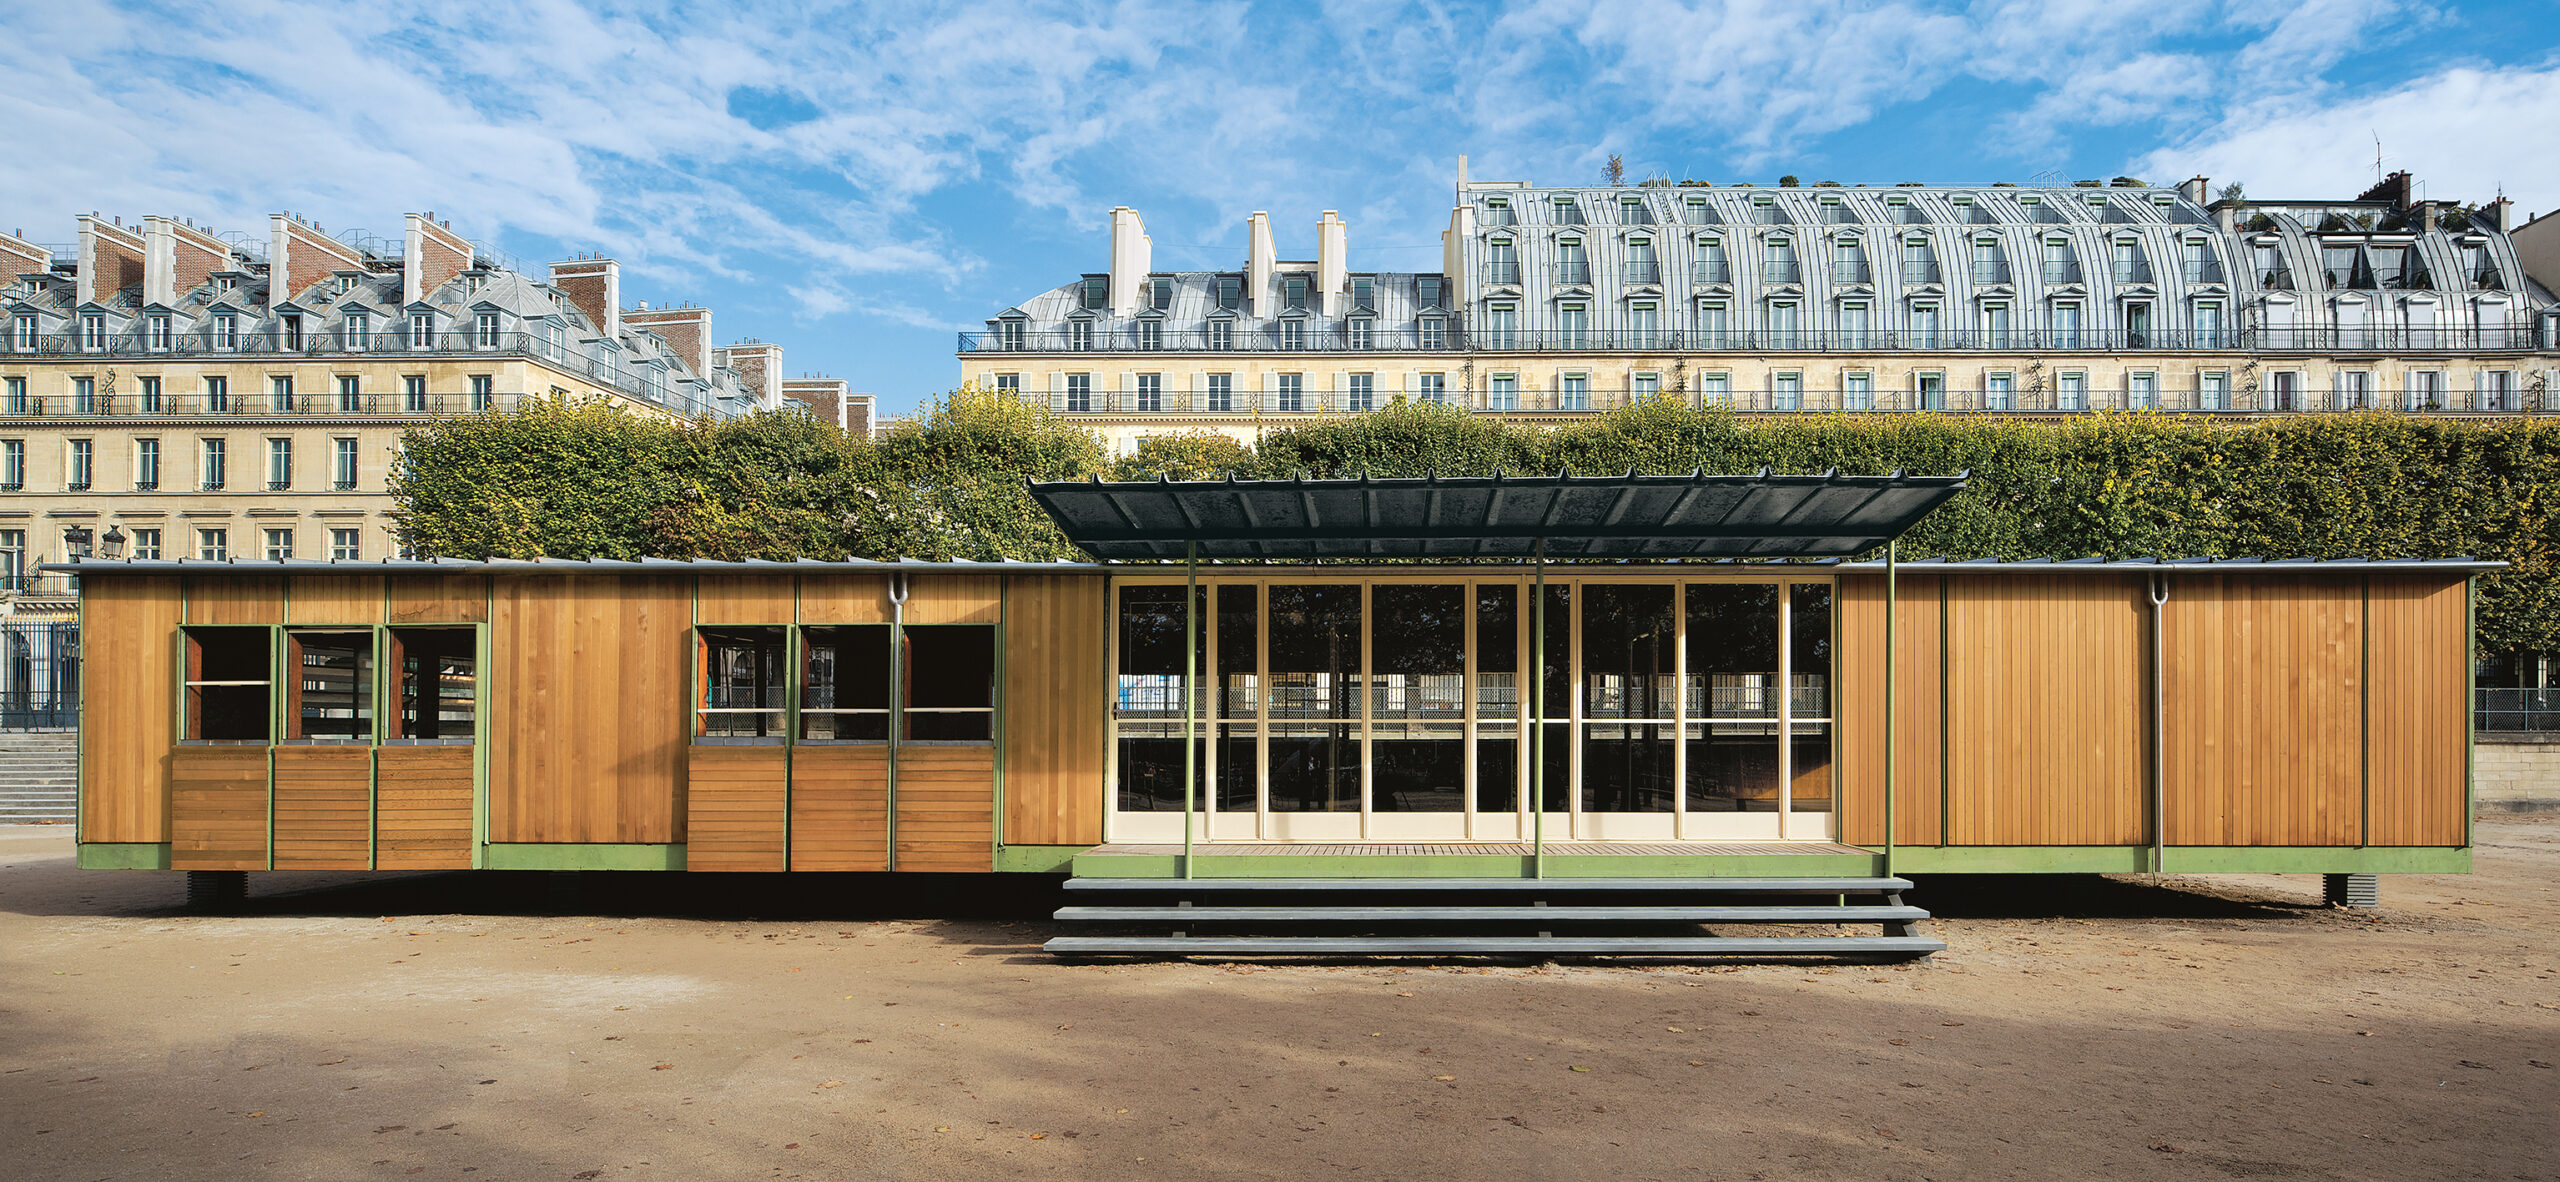 Ferembal house, Nancy, 1948. Adaptation Jean Nouvel, reassembled at Jardin des Tuileries, Paris, 2010.